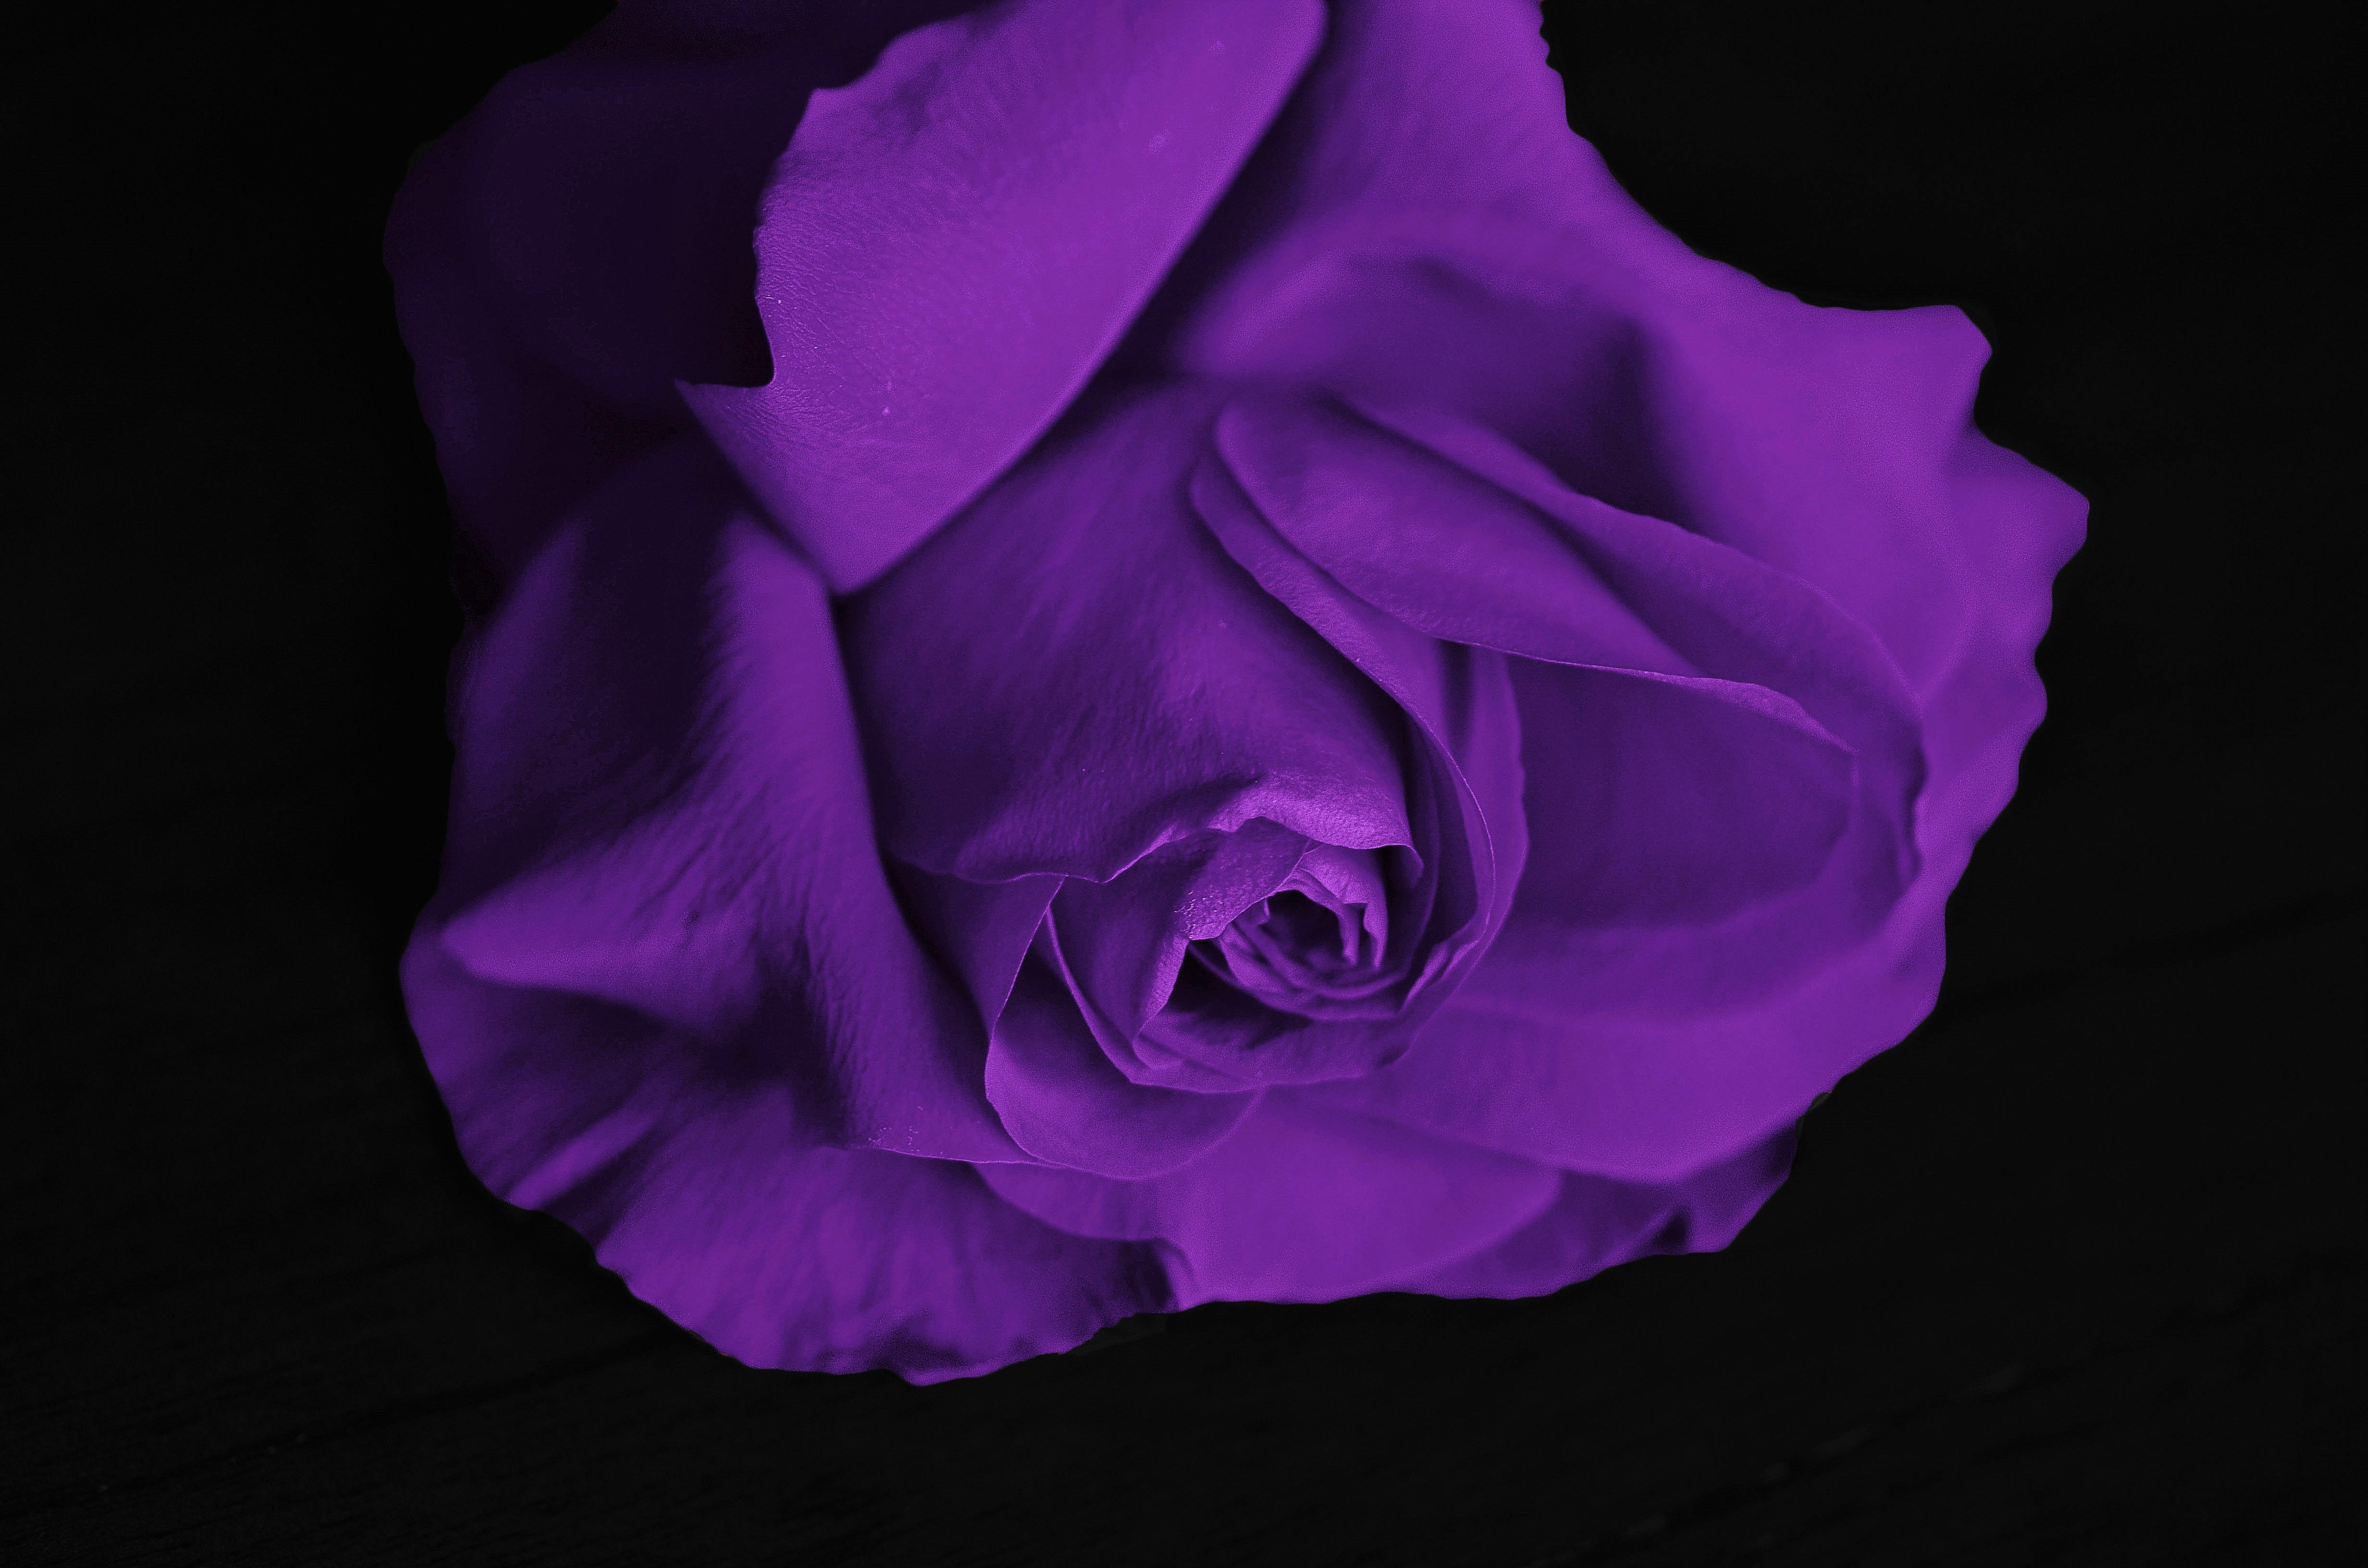 Скачать обои Фиолетовая Роза на телефон бесплатно